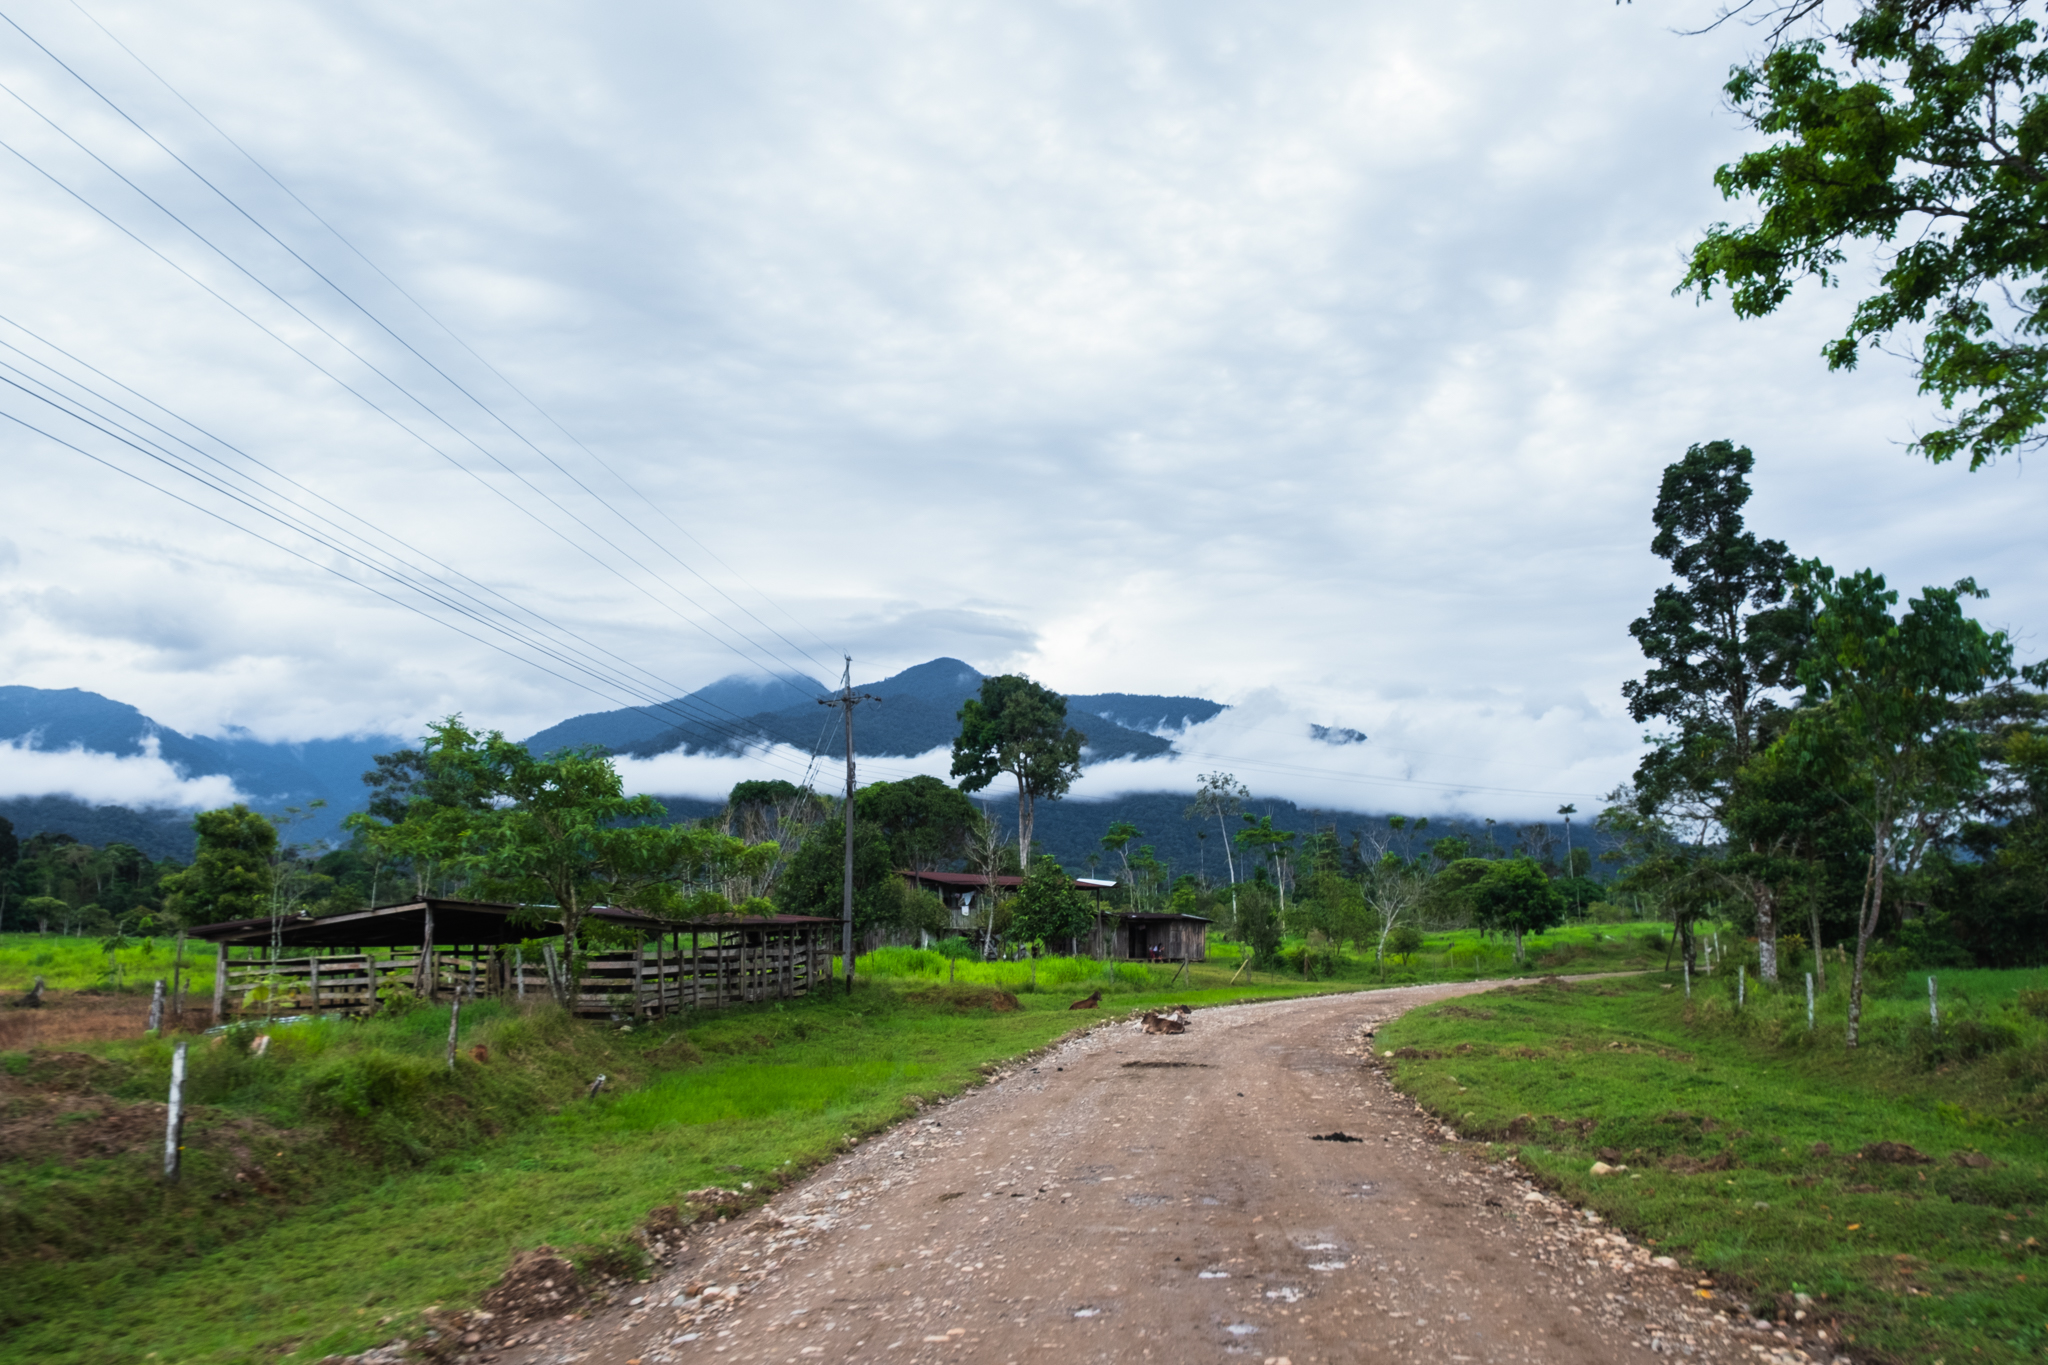 Vista del camino de tierra sobre el que se construirá la Carretera Marginal de la Selva, Piamonte, Cauca. Foto: Sergio Alejandro Melgarejo.